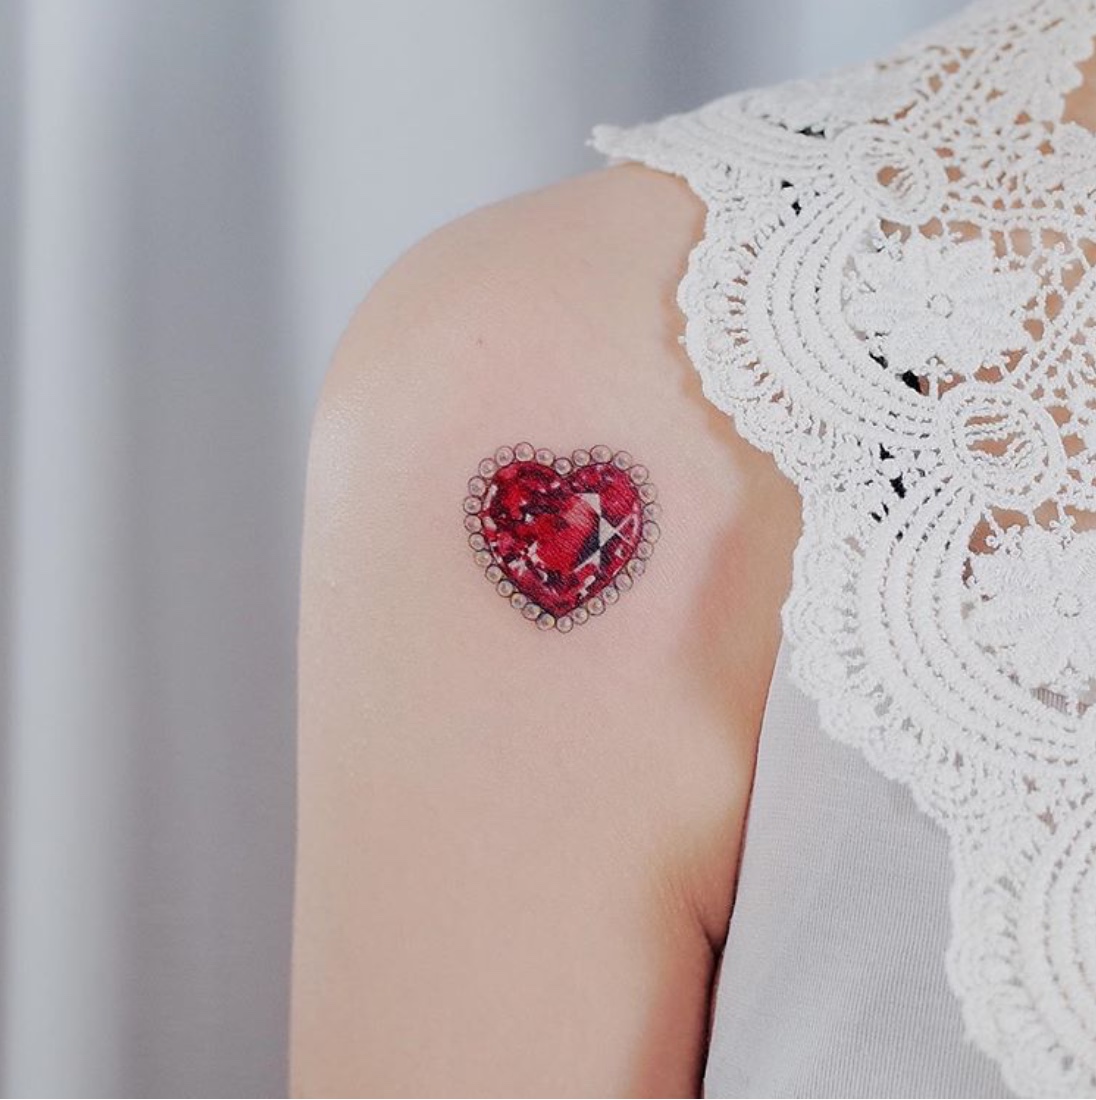 heart gem tattoo